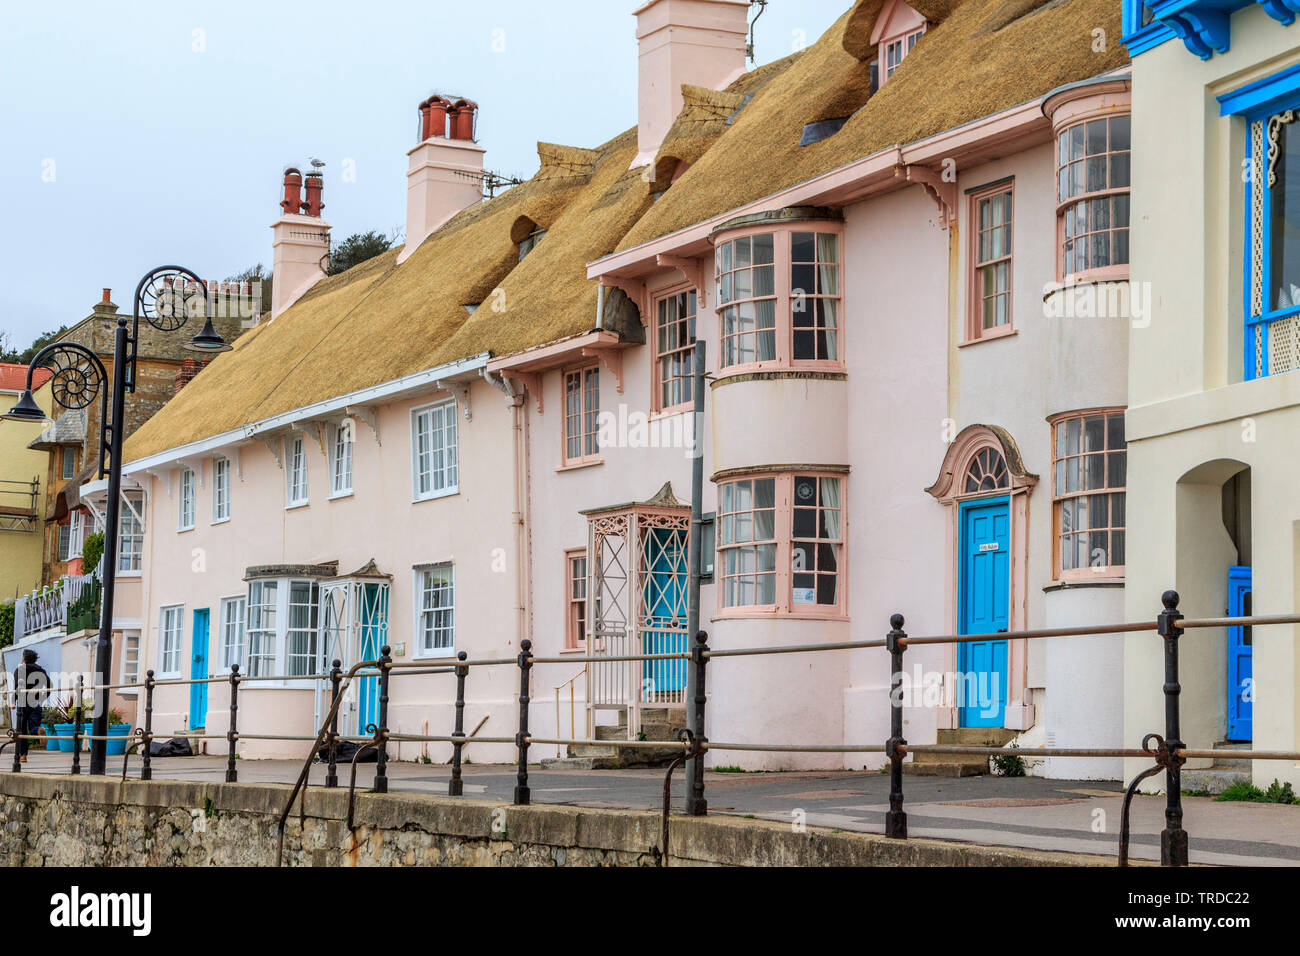 Lyme Regis town centre ville en bord de plage, dorset, England, UK, FR Banque D'Images